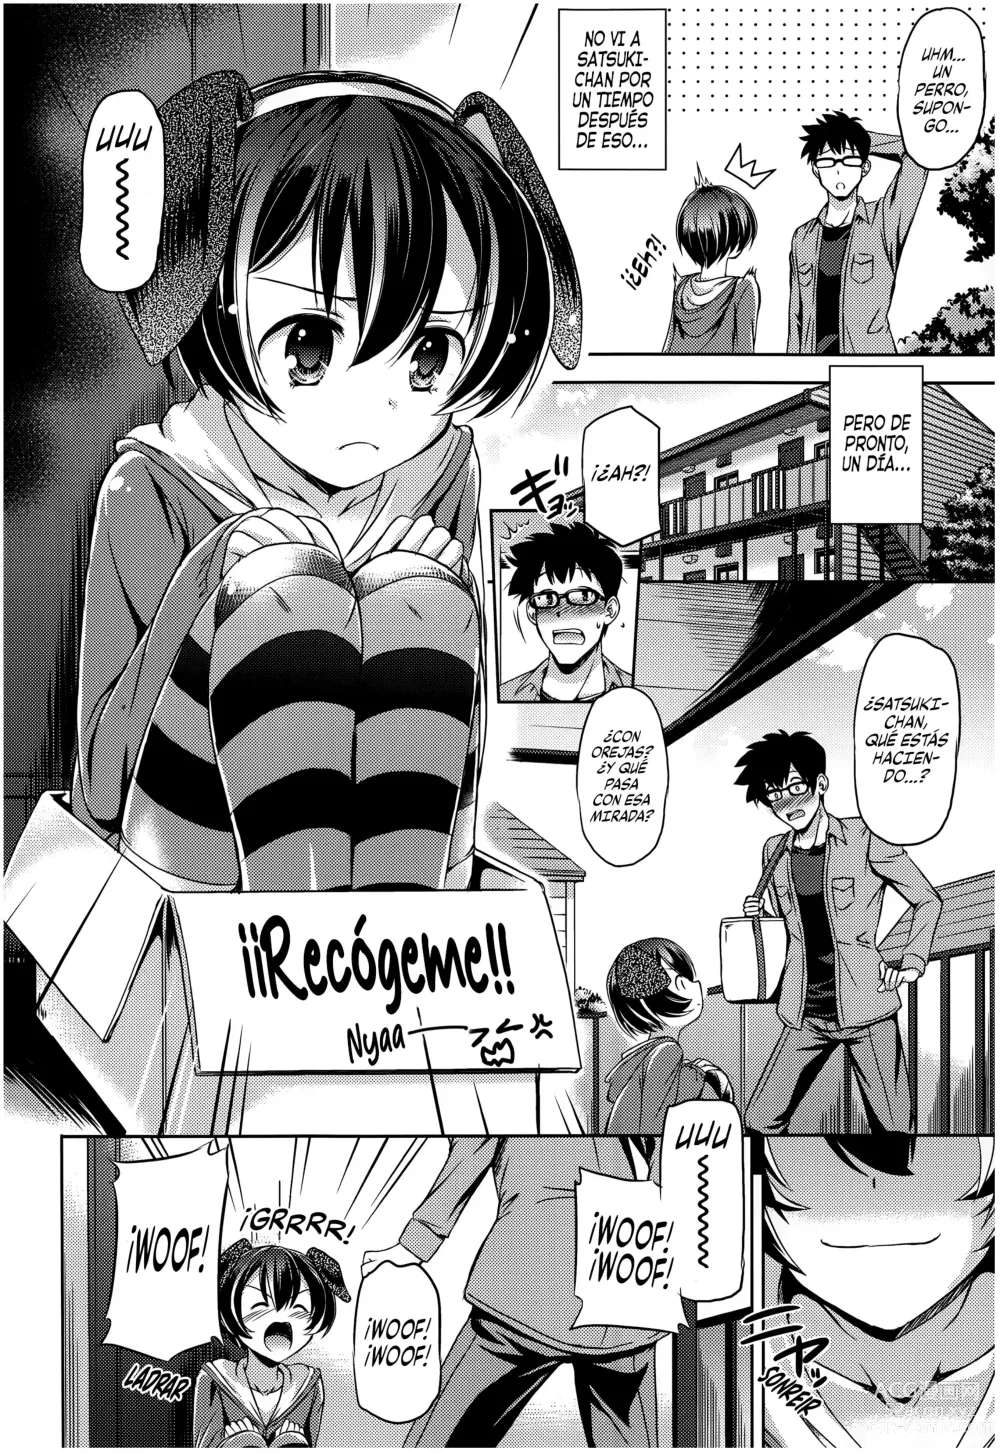 Page 4 of manga Entrenando a un Perrito